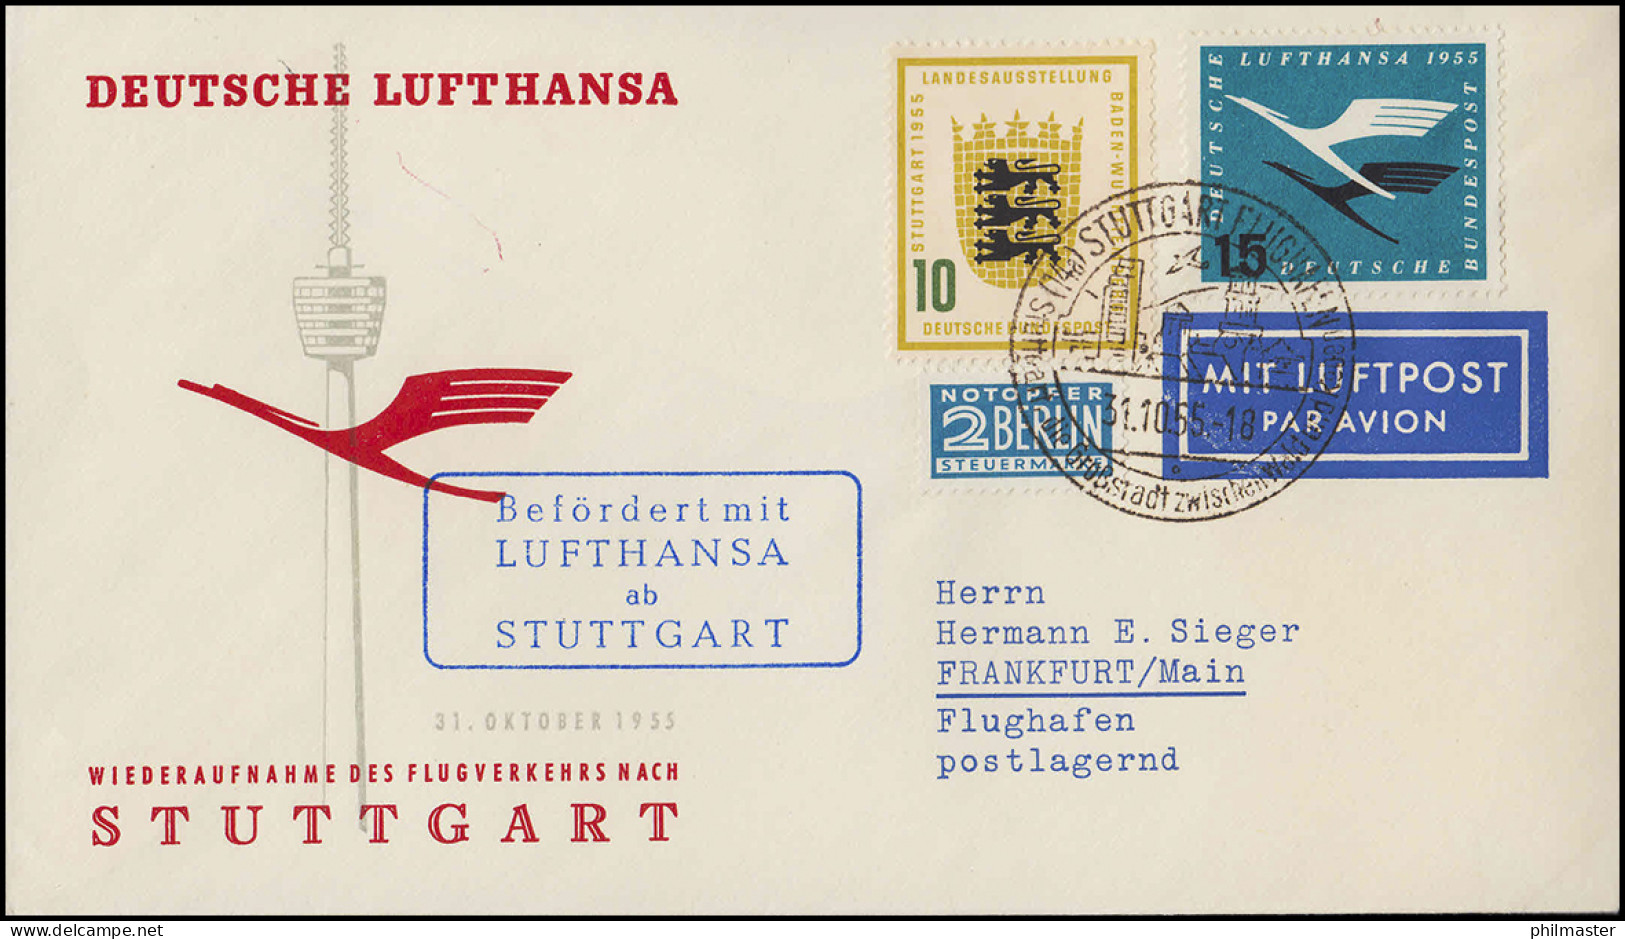 Luftpost Lufthansa Wiederaufnahme Inland Flugverkehr Nach Stuttgart, 31.10.1955 - Primeros Vuelos